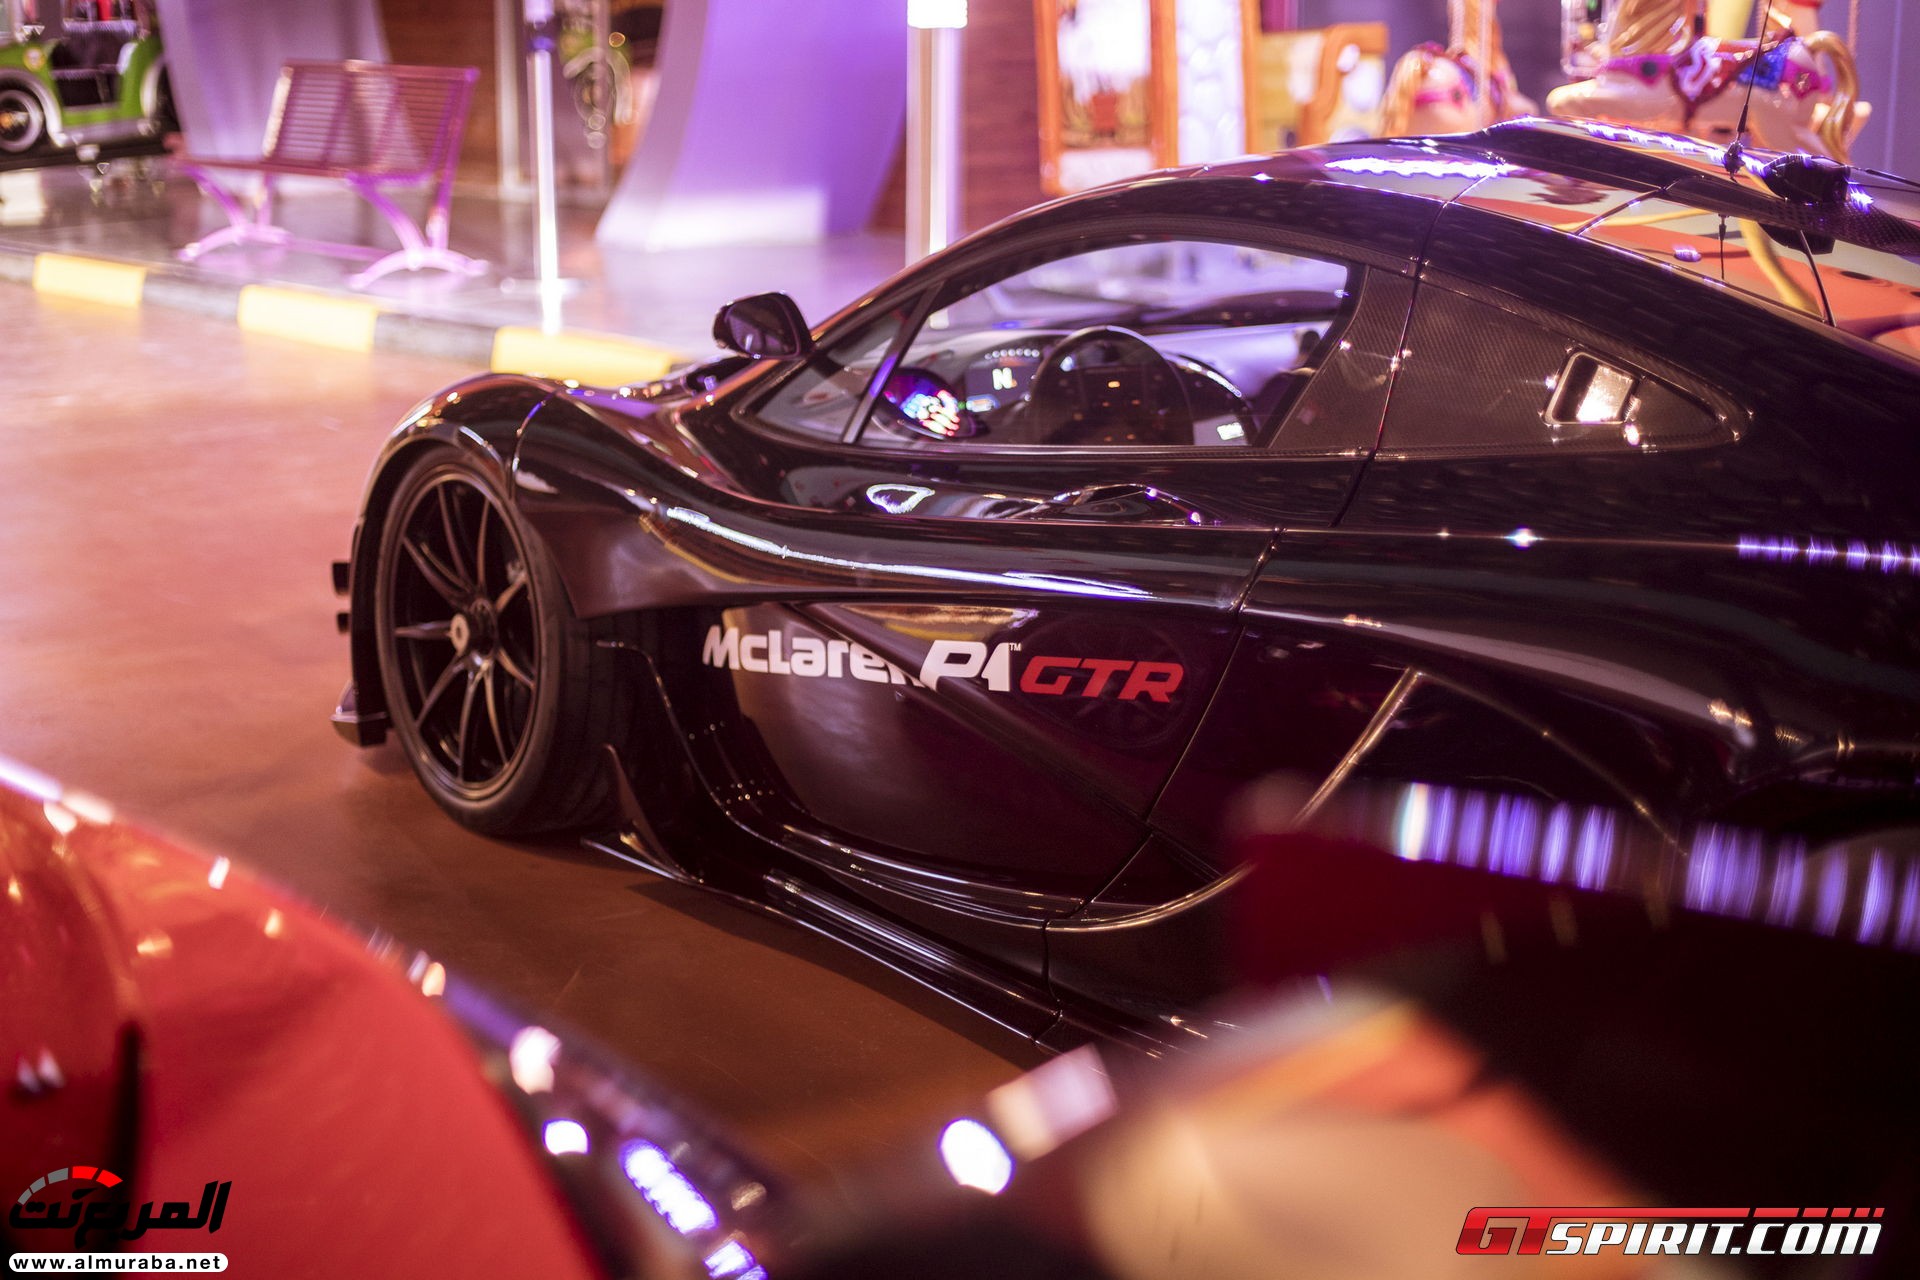 "بالصور" مكلارين P1 GTR تصل أراضي دبي وتعرض وحدتين منها بالمنتزه الأكبر في العالم McLaren 27